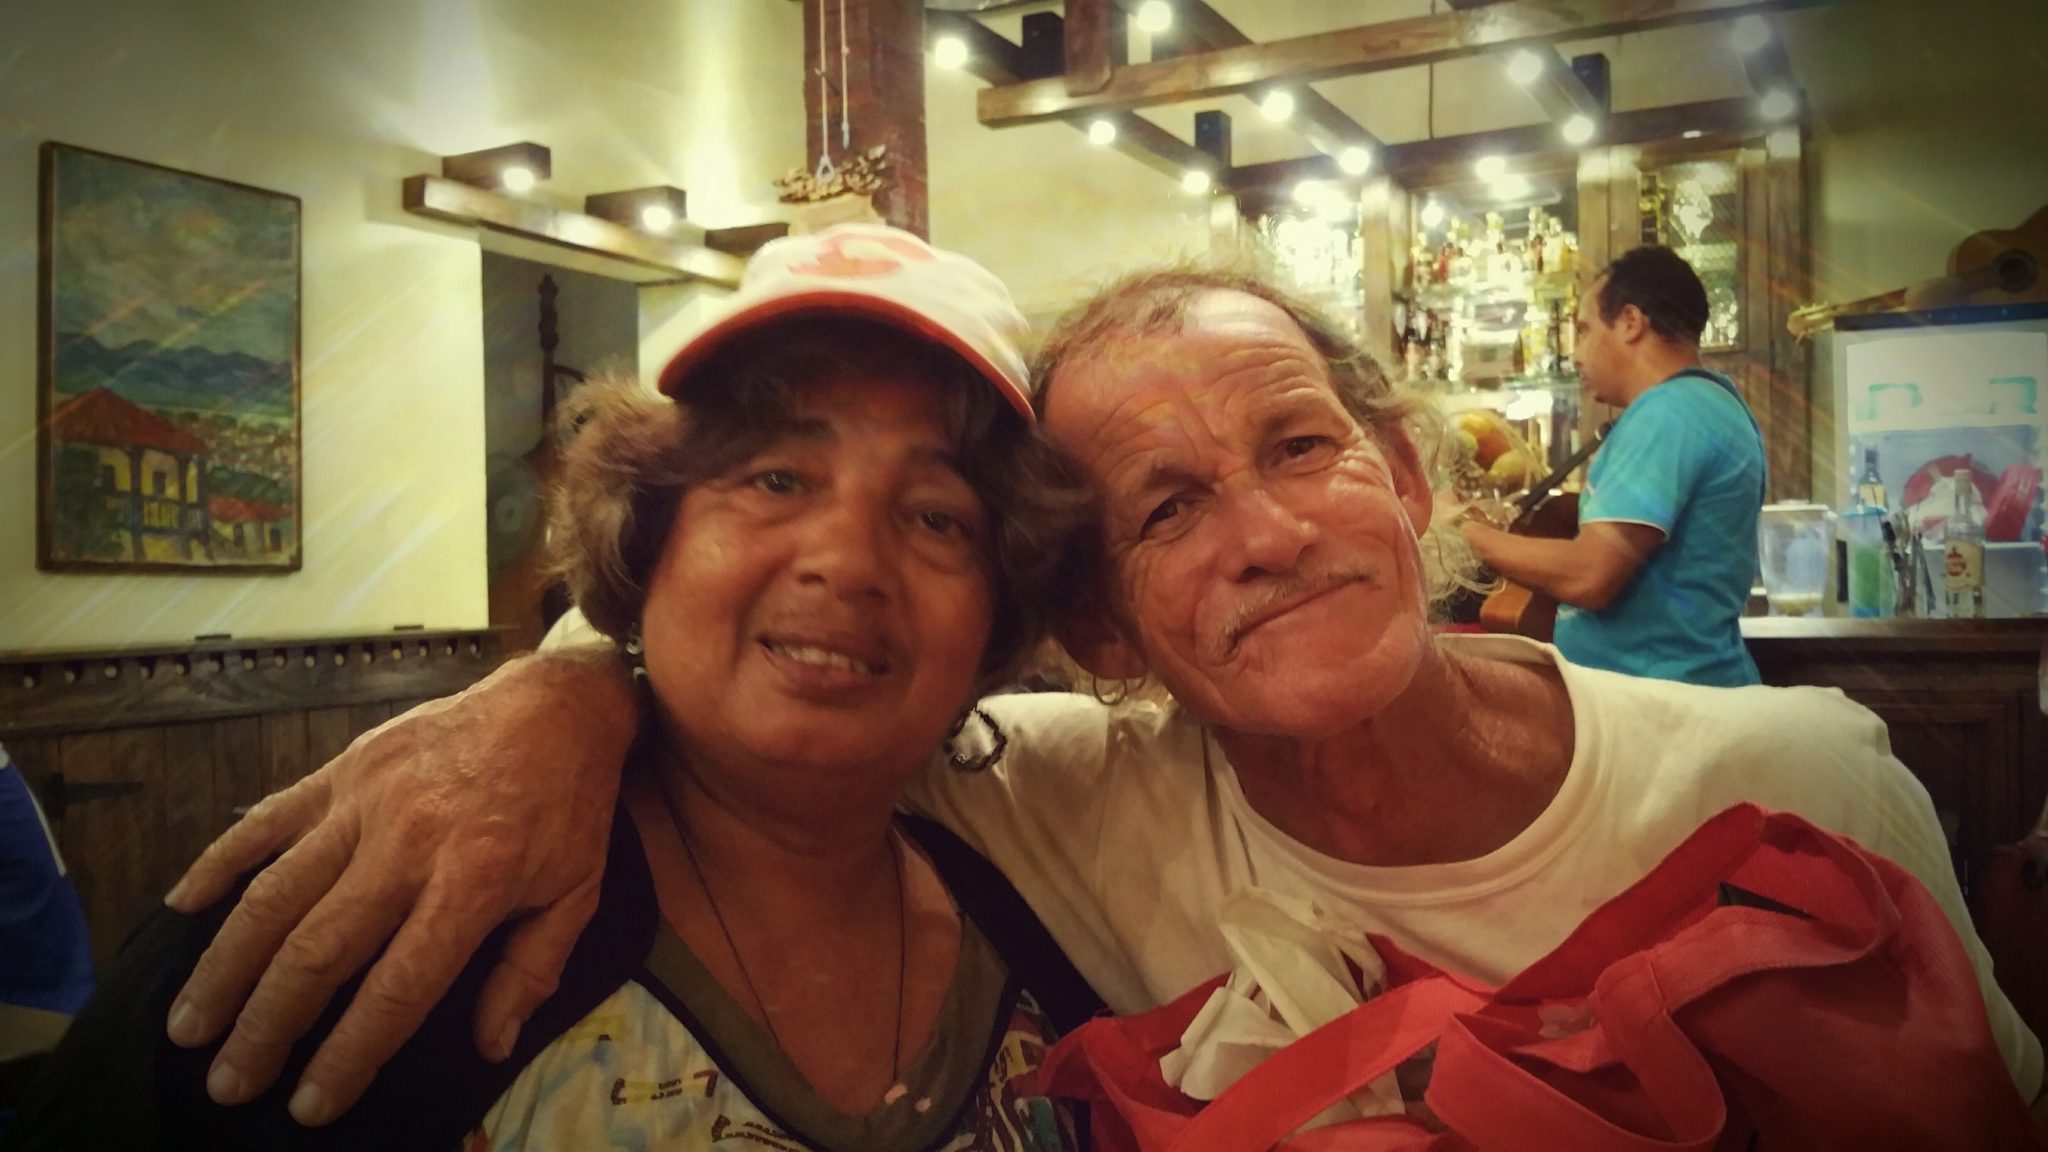 Xiomara Vidal & Rudy Daquin at Casa del Queso